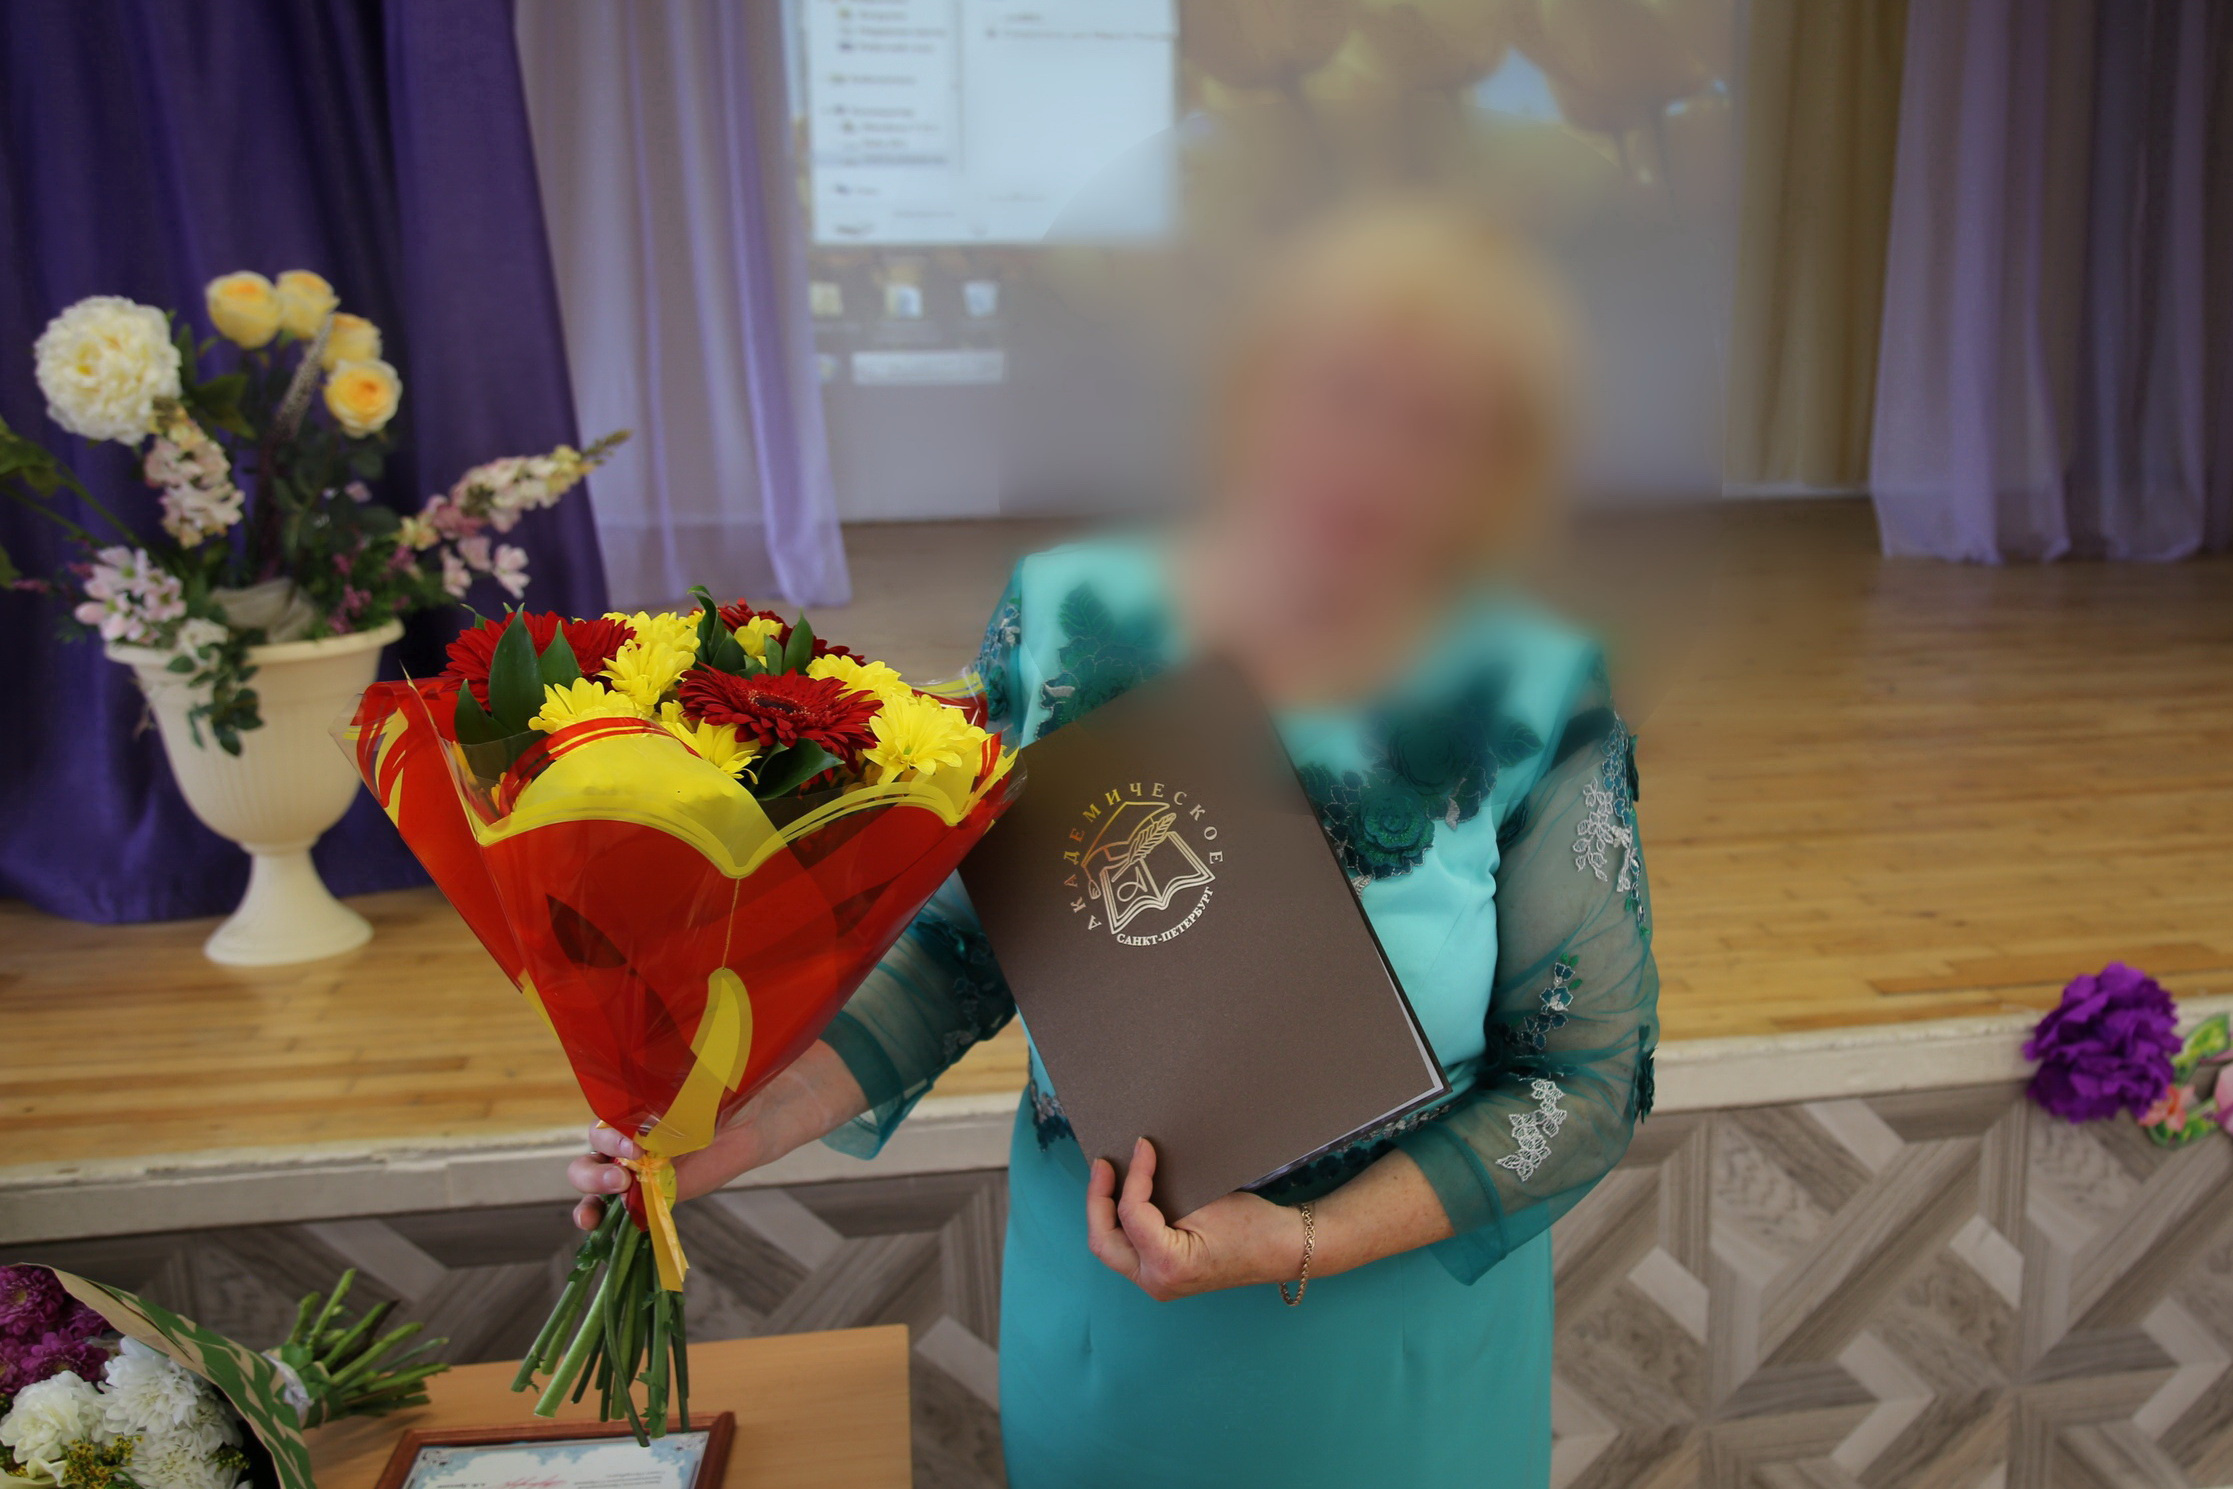 Публичная порка или поиск справедливости? В петербургской школе родители добиваются увольнения пожилого педагога